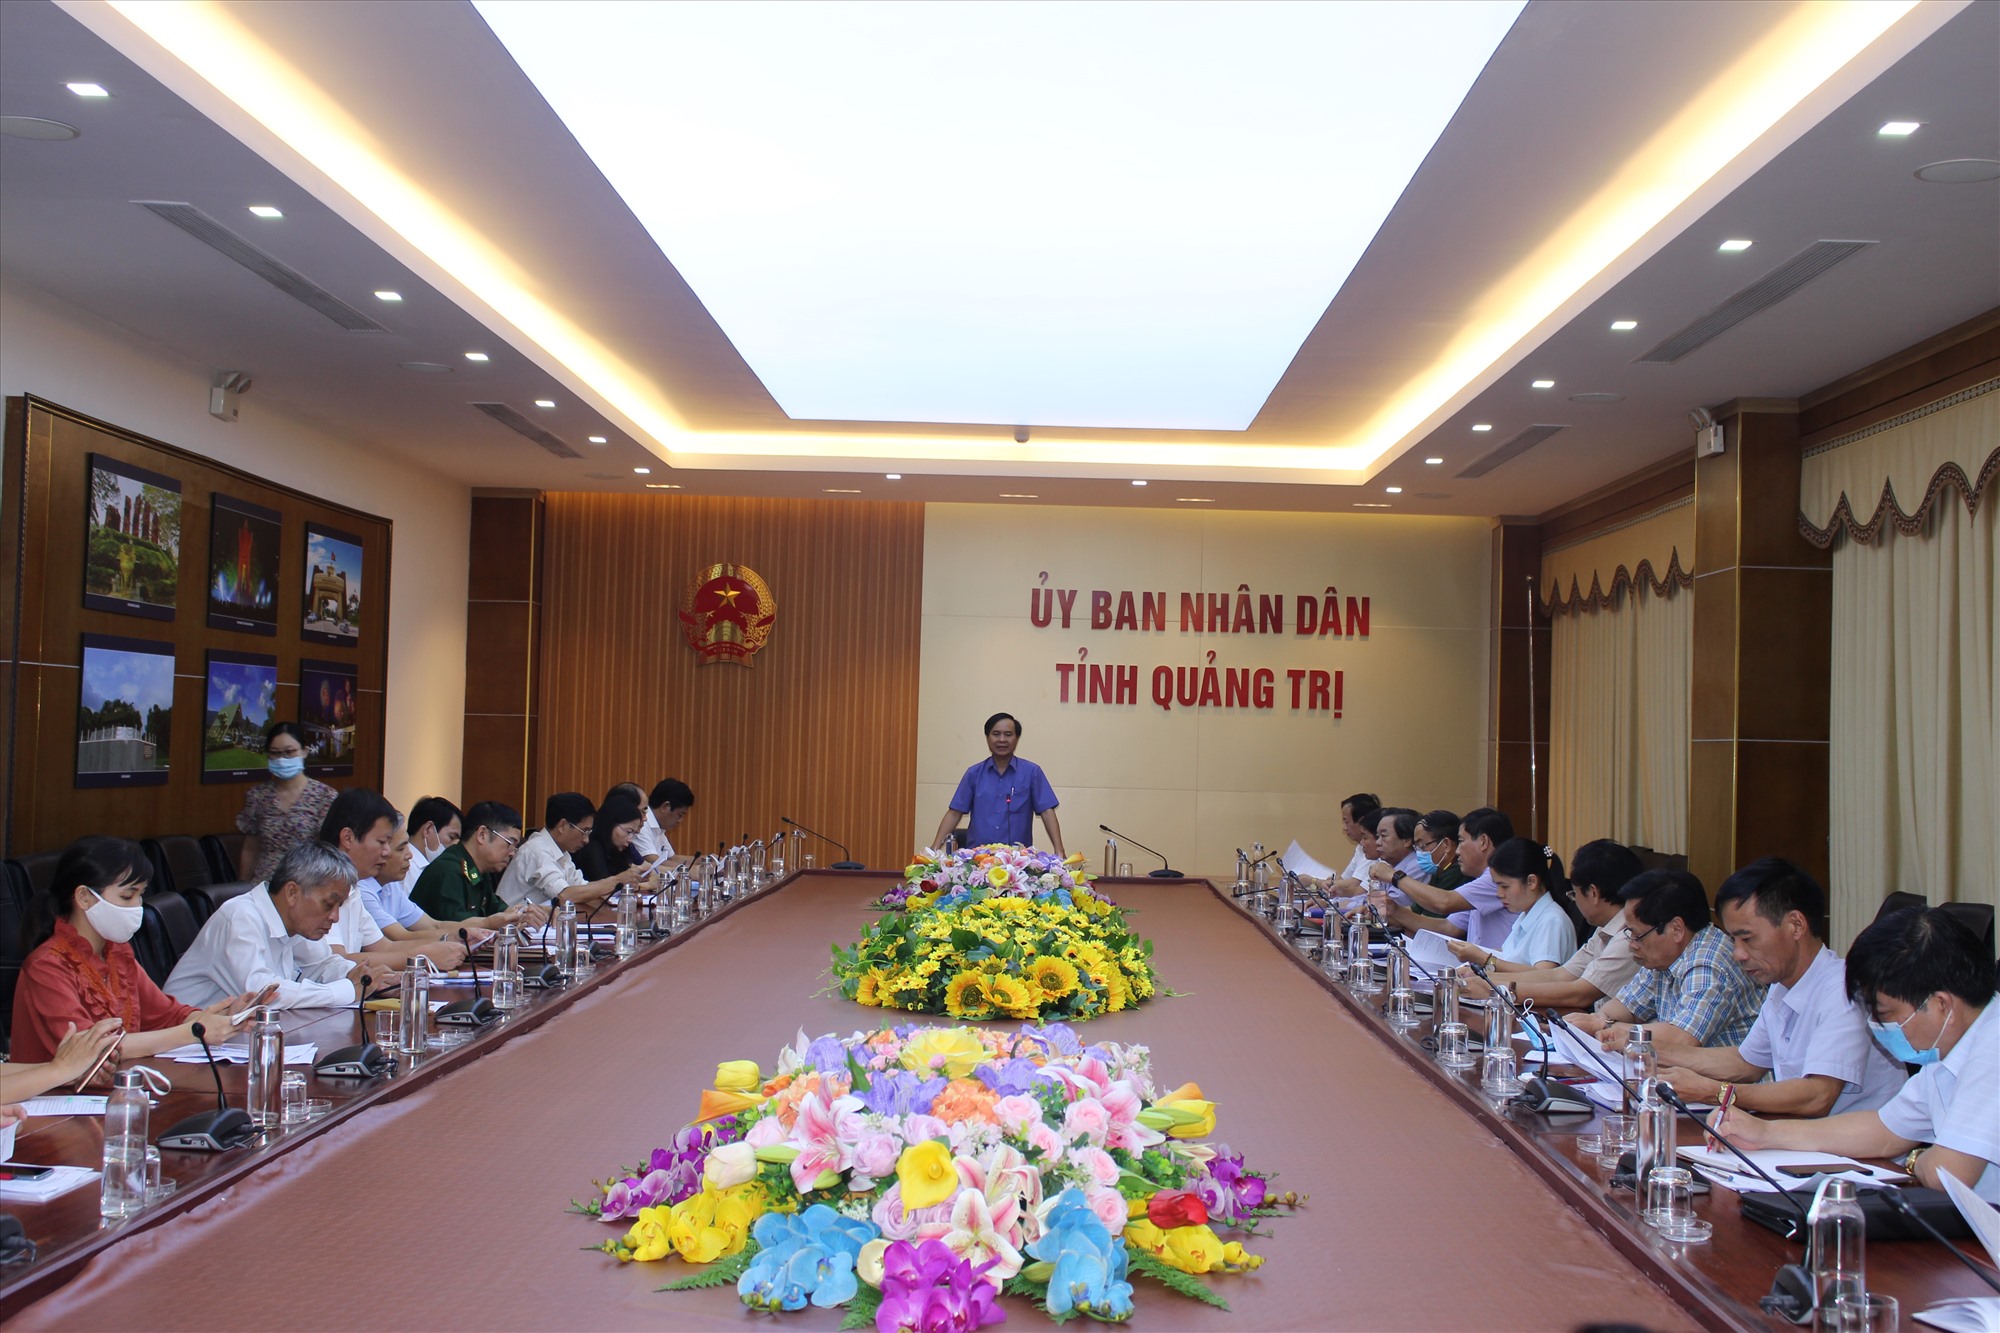 Chủ tịch UBND tỉnh Võ Văn Hưng: Tiếp tục các biện pháp phòng, chống dịch trong trạng thái bình thường mới, vừa chống dịch vừa đảm bảo phát triển kinh tế-xã hội - Ảnh: H.T